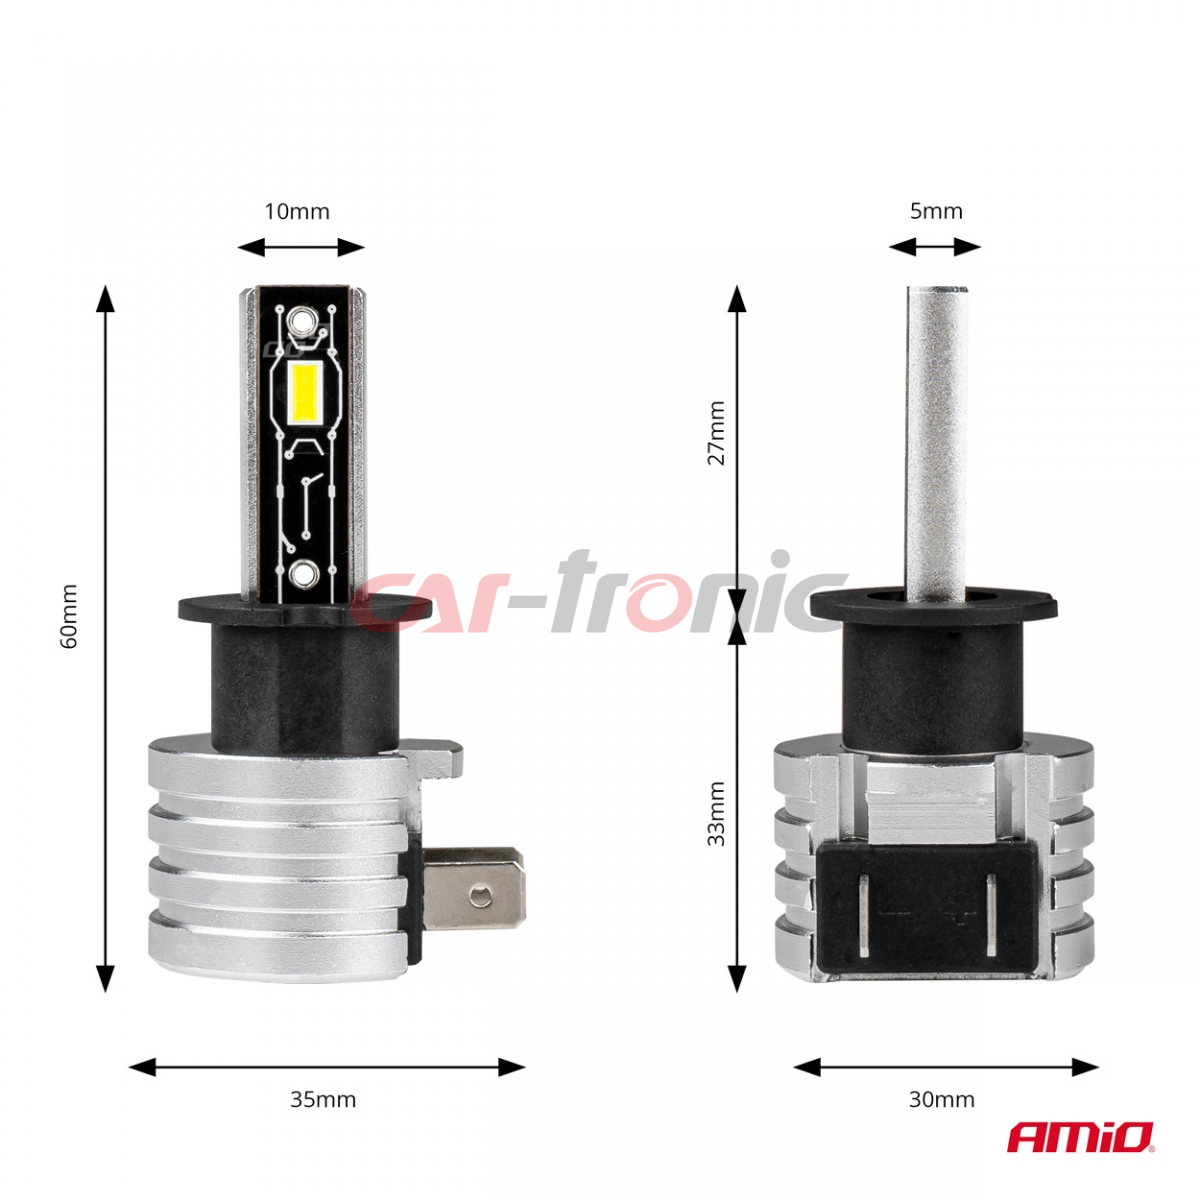 Żarówki samochodowe LED seria H-mini H3 6500K Canbus AMIO-03330